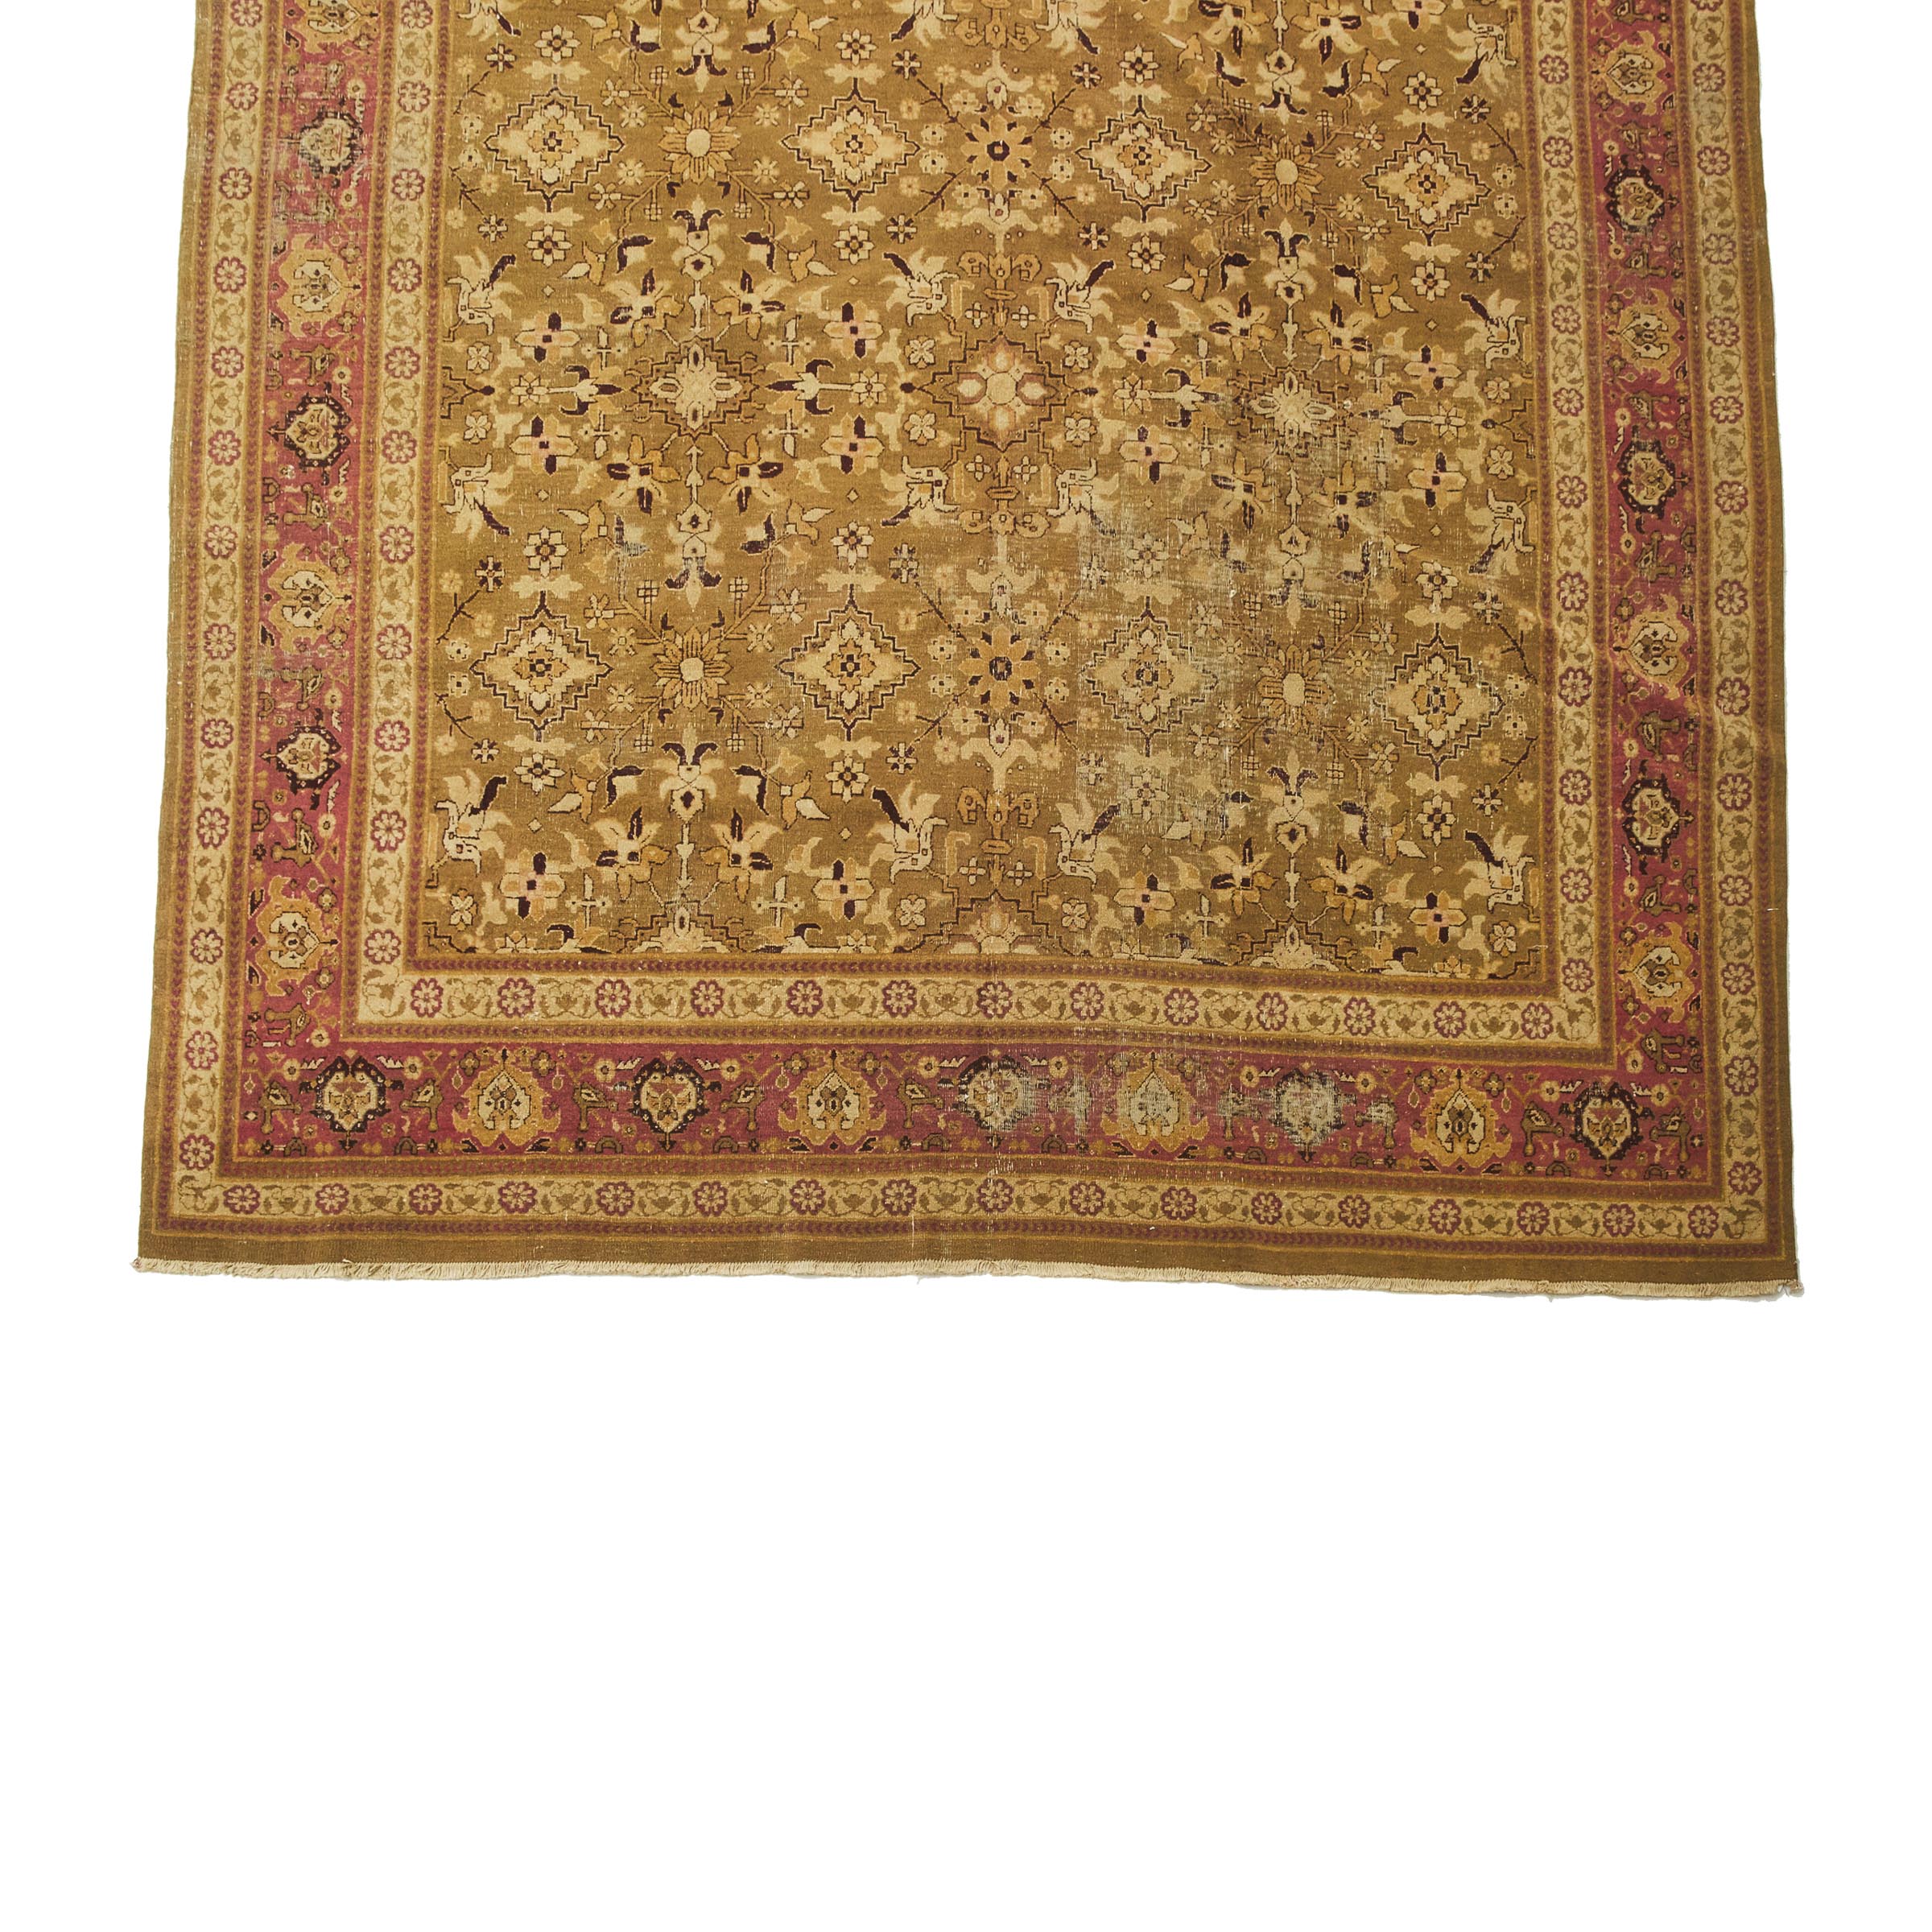 Indian Amritzar Carpet, c.1870/80